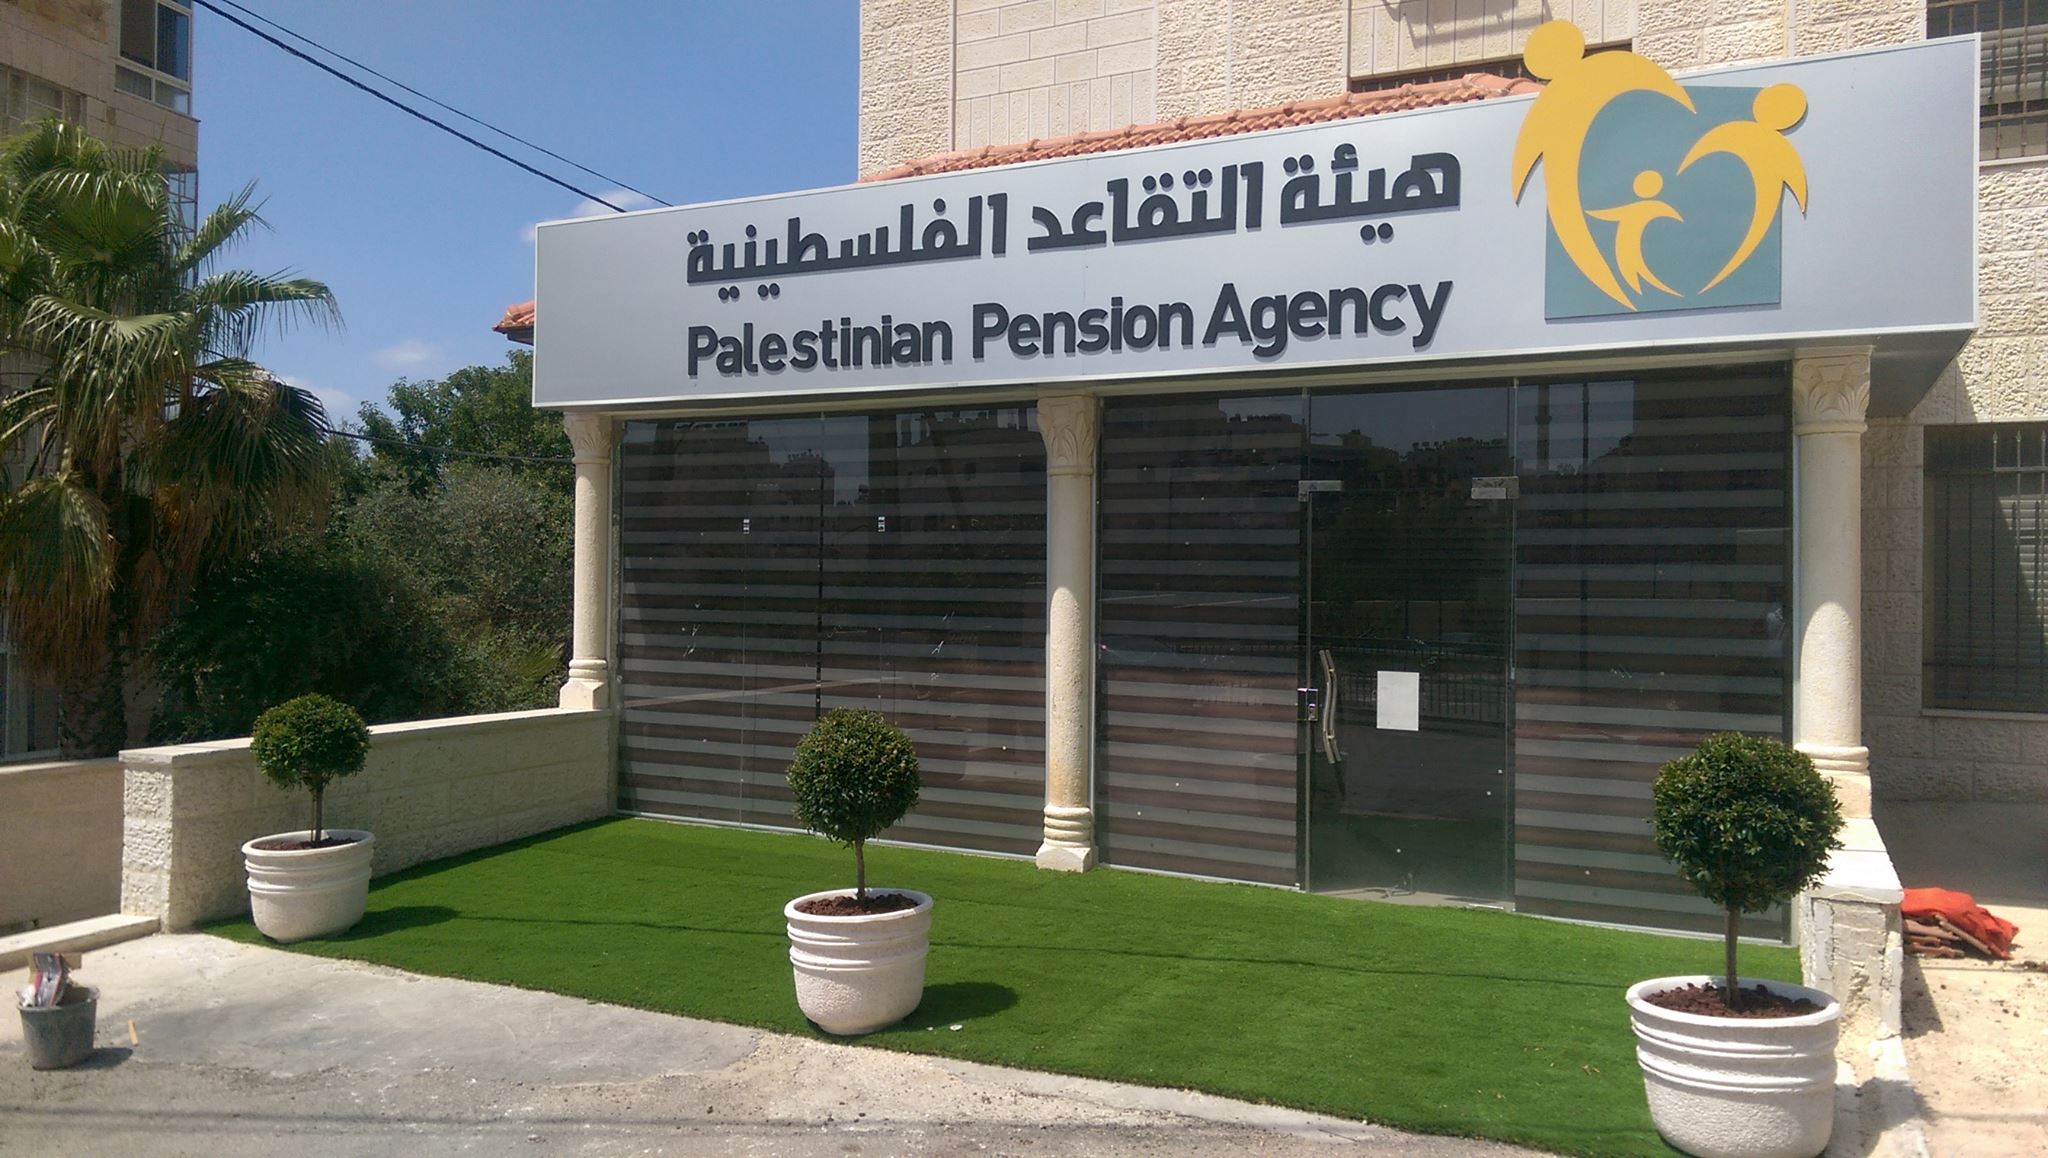 هيئة التقاعد الفلسطينية في رام الله watanserb.com